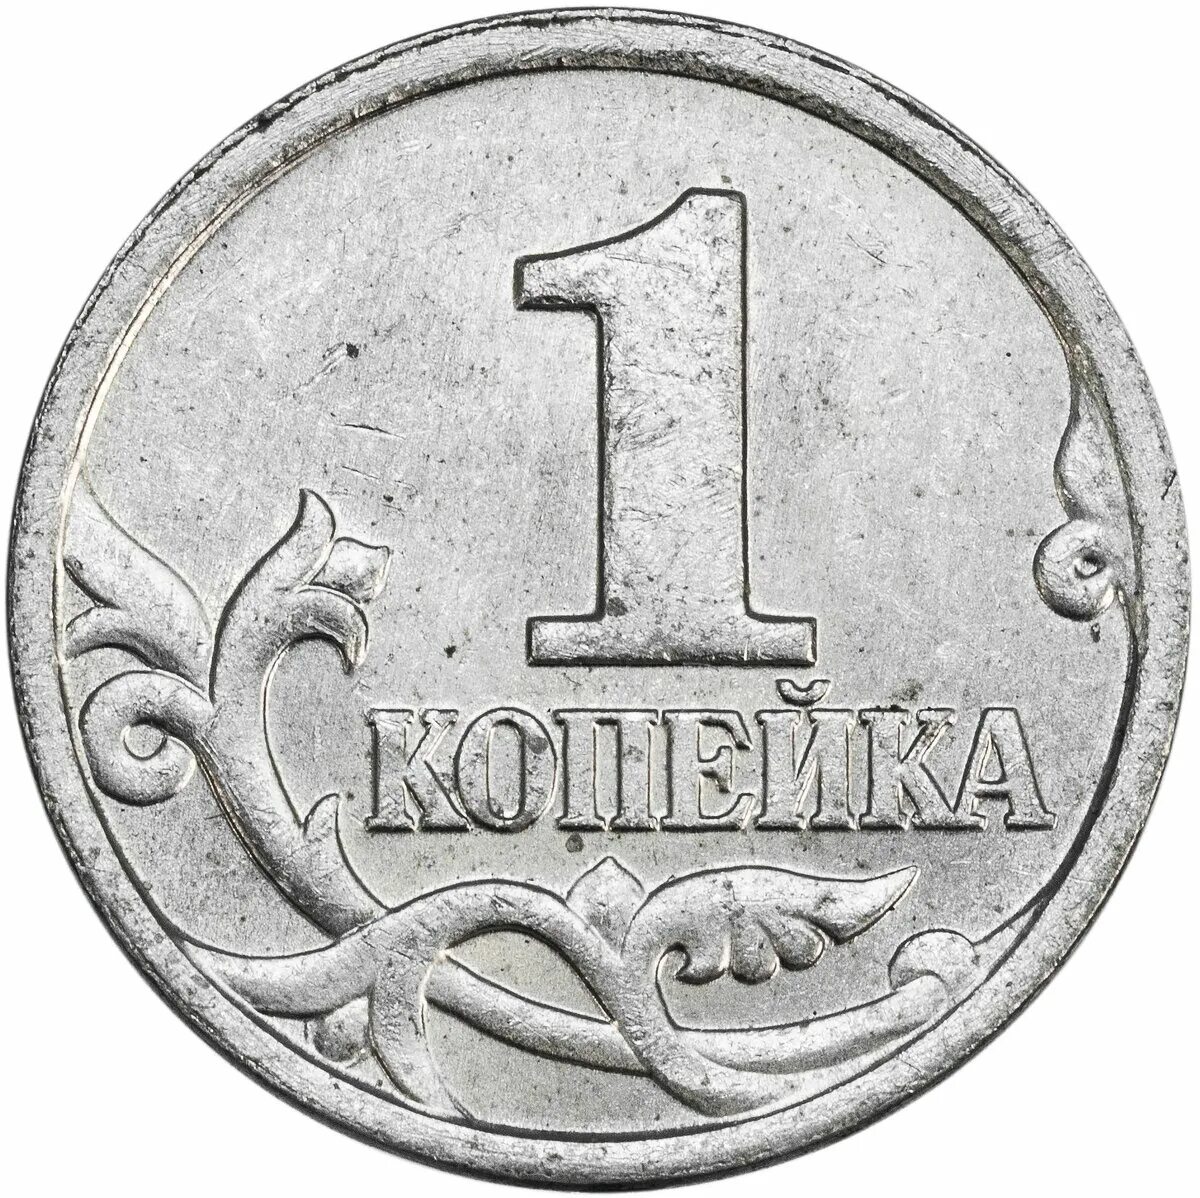 5 85 в рублях. Монеты России 1 копейка. Монета рисунок. Изображение монеты 1 копейка. 5 Копеек в рублях.